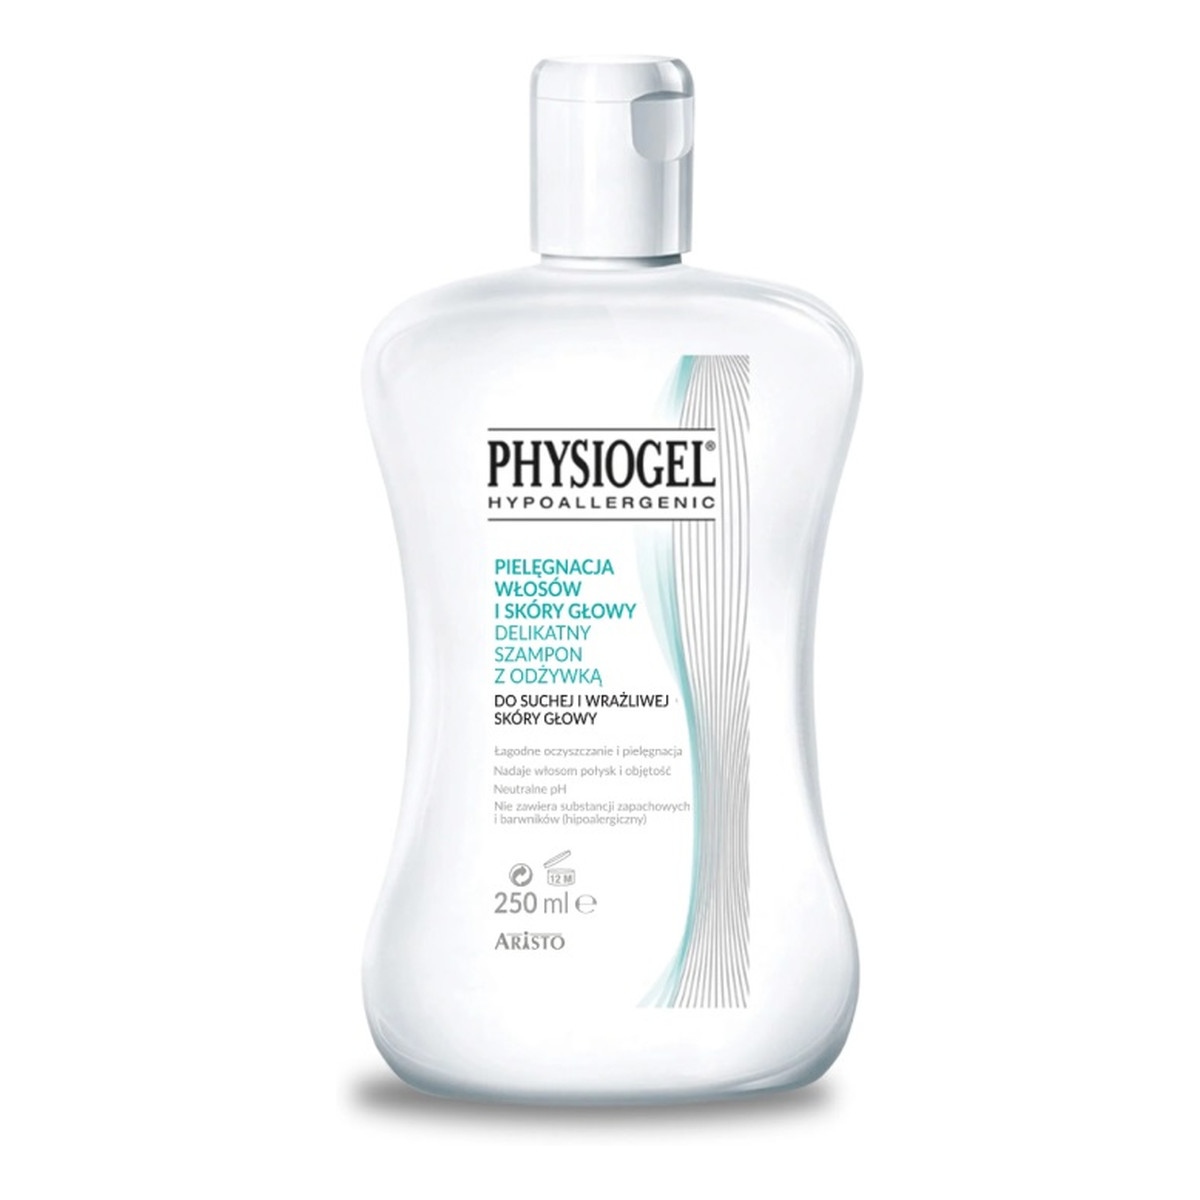 Physiogel Delikatny szampon z odżywką do suchej i wrażliwej skóry głowy 250ml